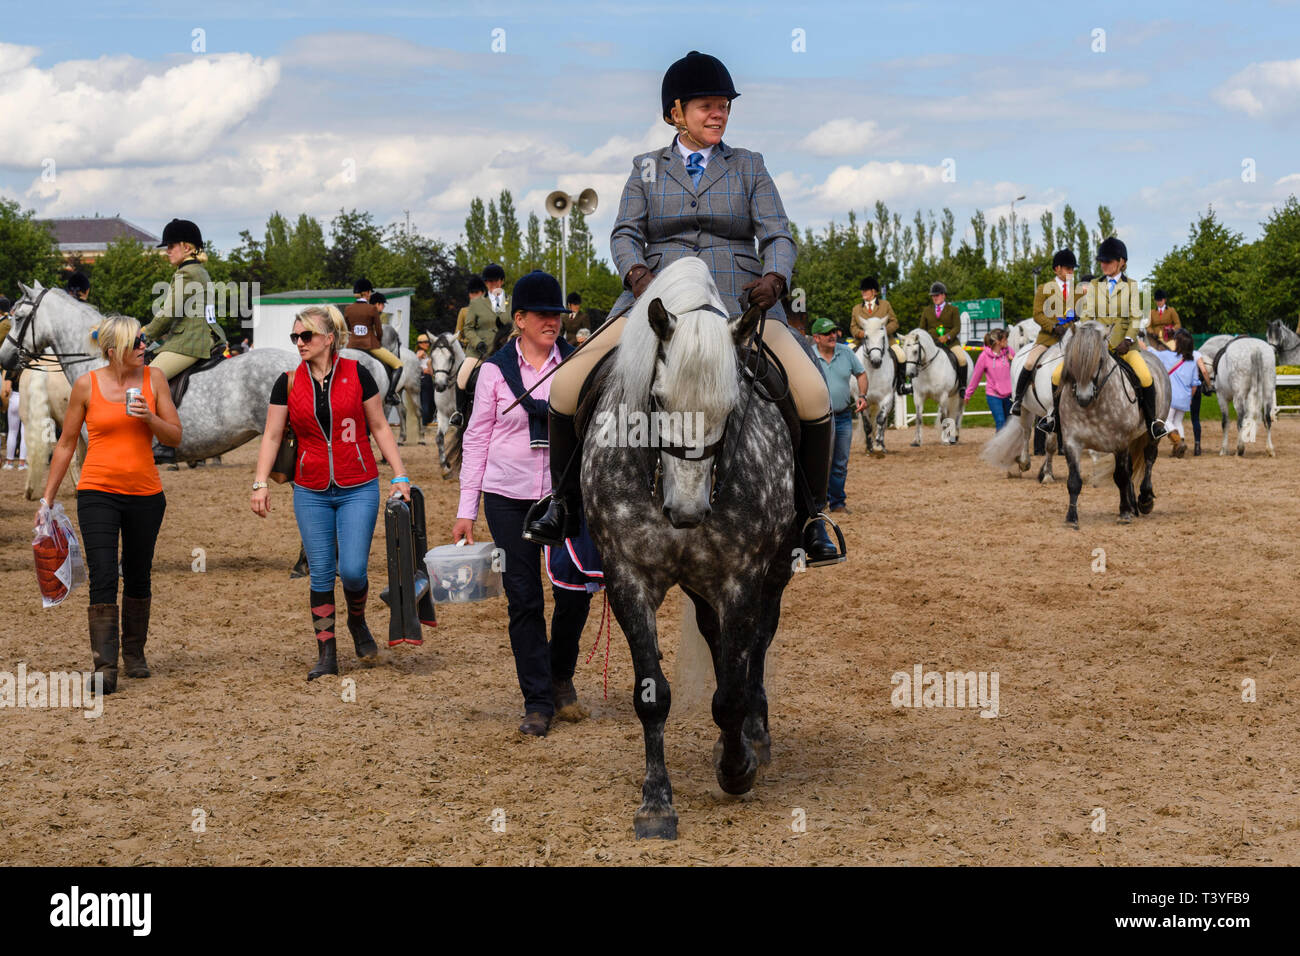 Weibliche Teilnehmer in der Pferdeartigen Klasse in Reitbekleidung & Hut rittlings graues Pferd Pony (Wettbewerber in der Praxis Ring) - tolle Yorkshire, England, UK gekleidet Stockfoto